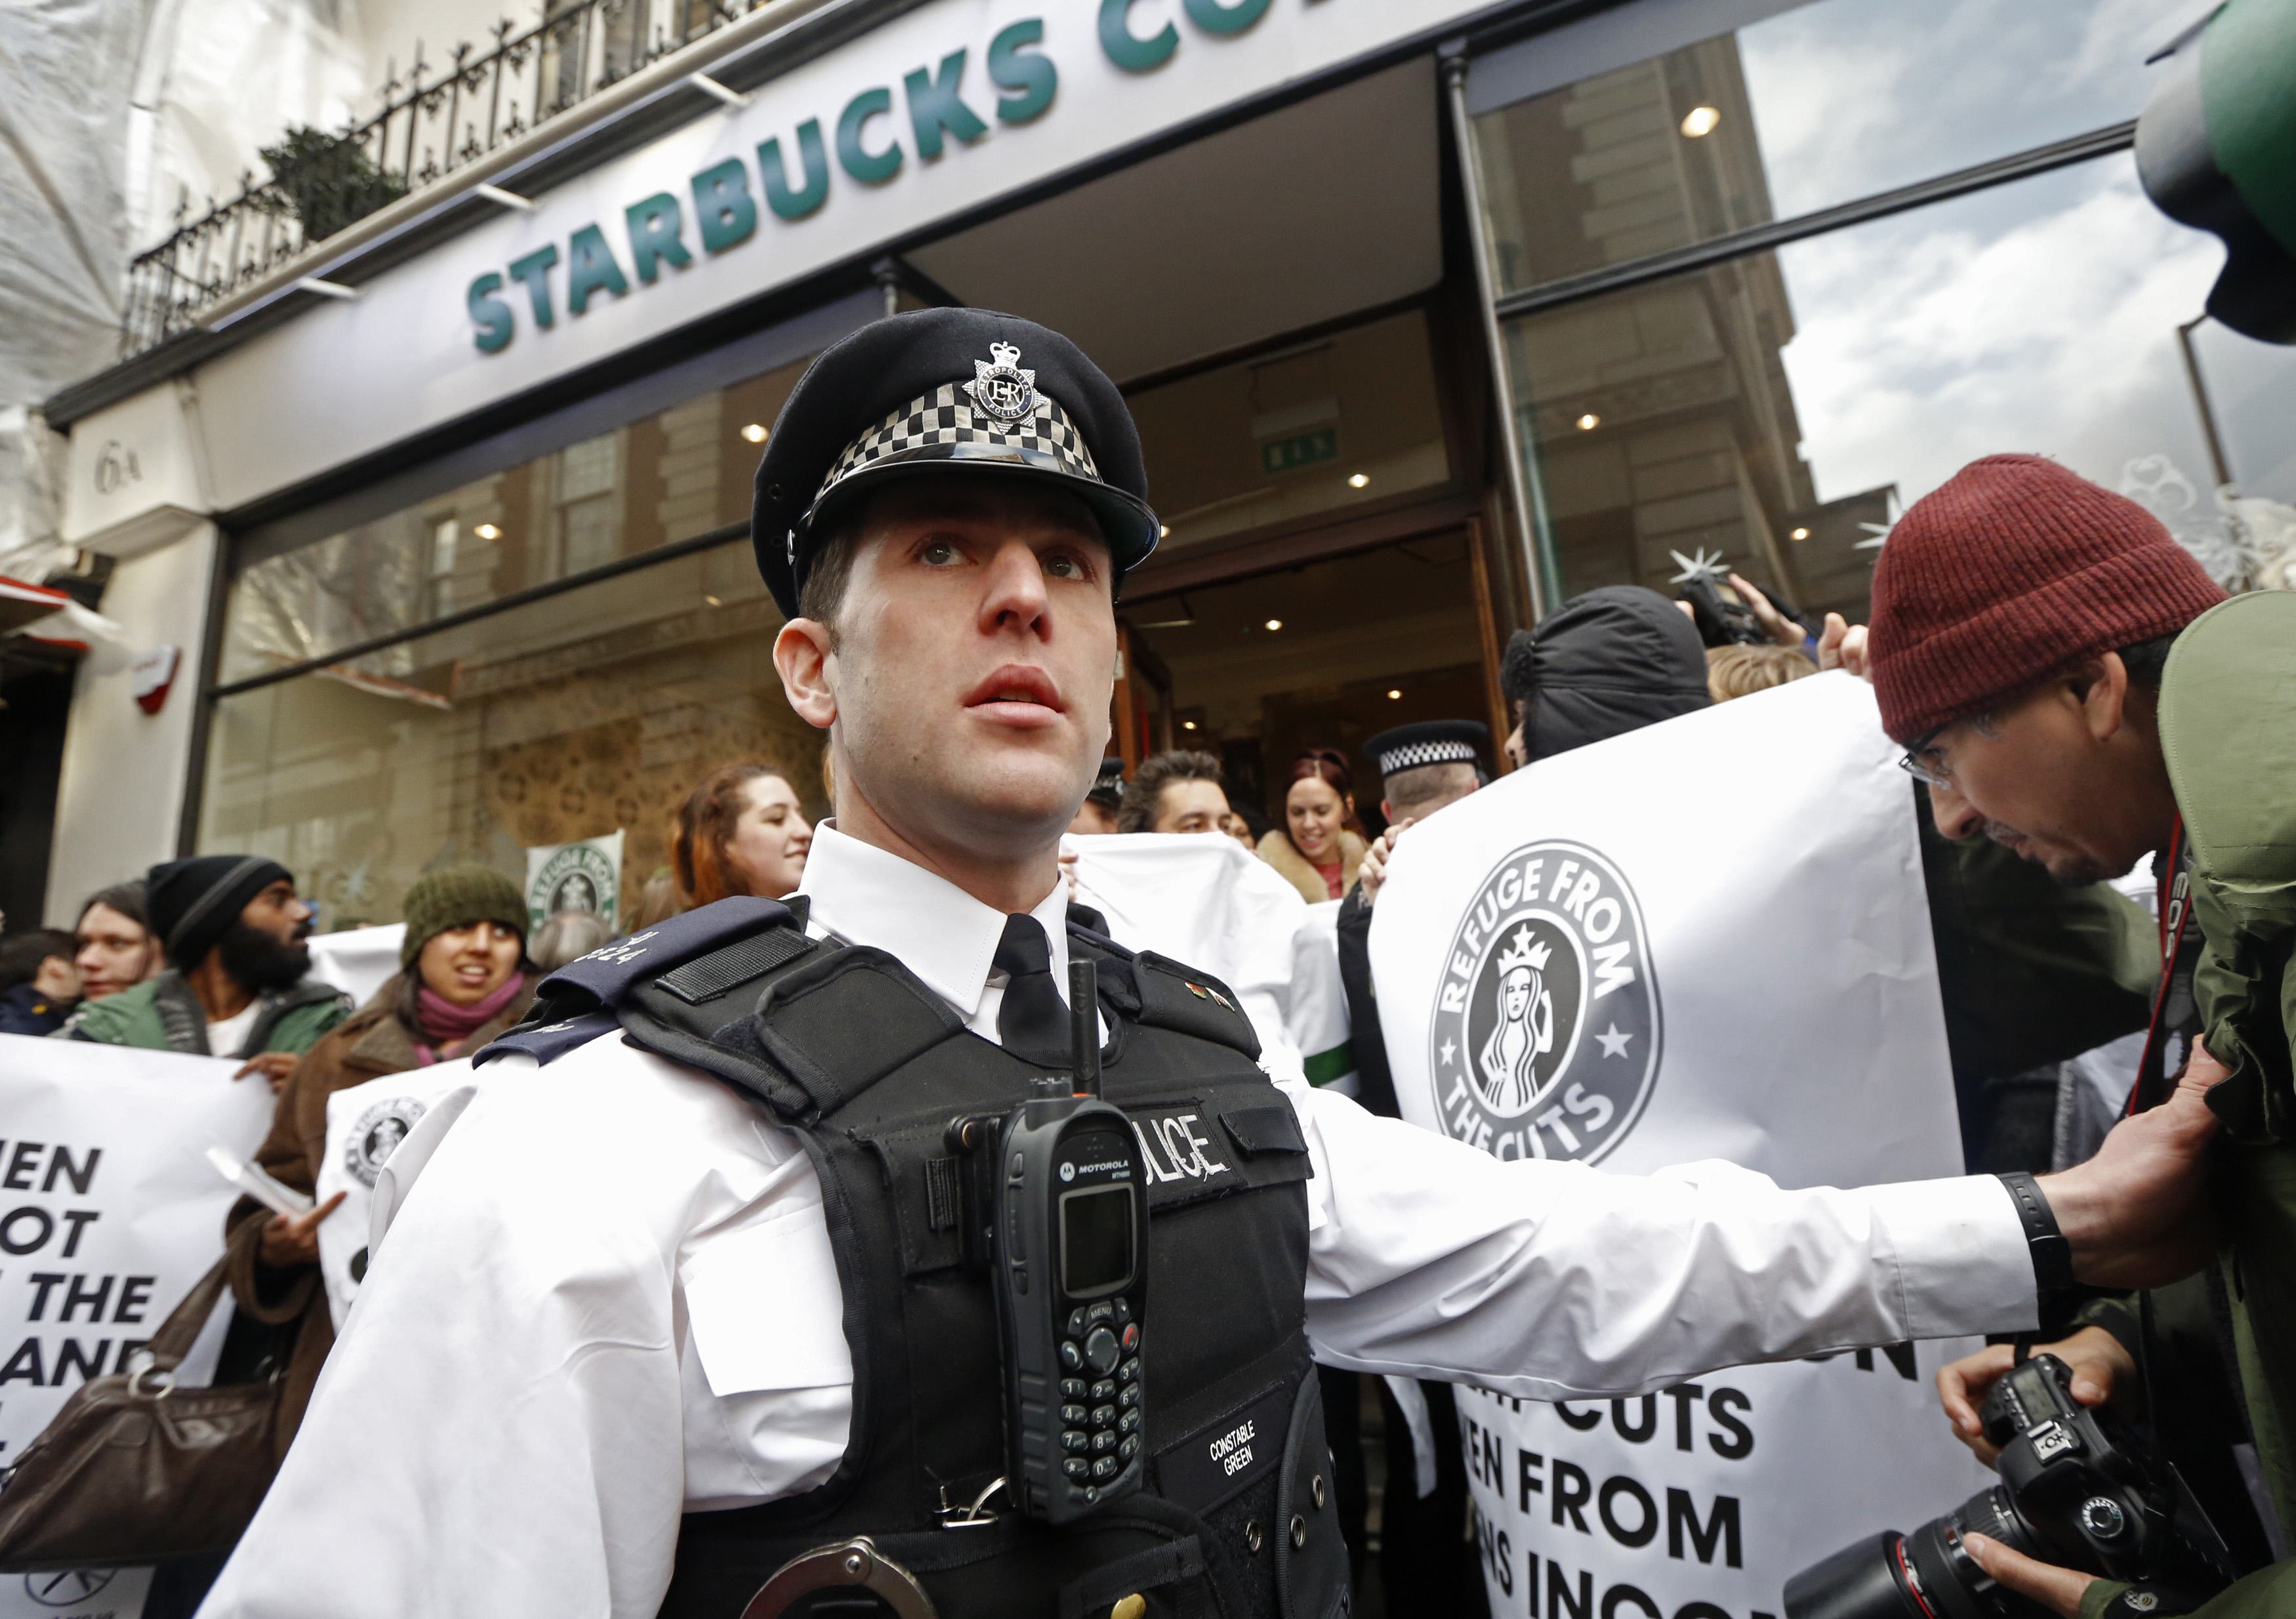 Βρετανία: Διαδηλώσεις έξω από καταστήματα της αλυσίδας Starbucks